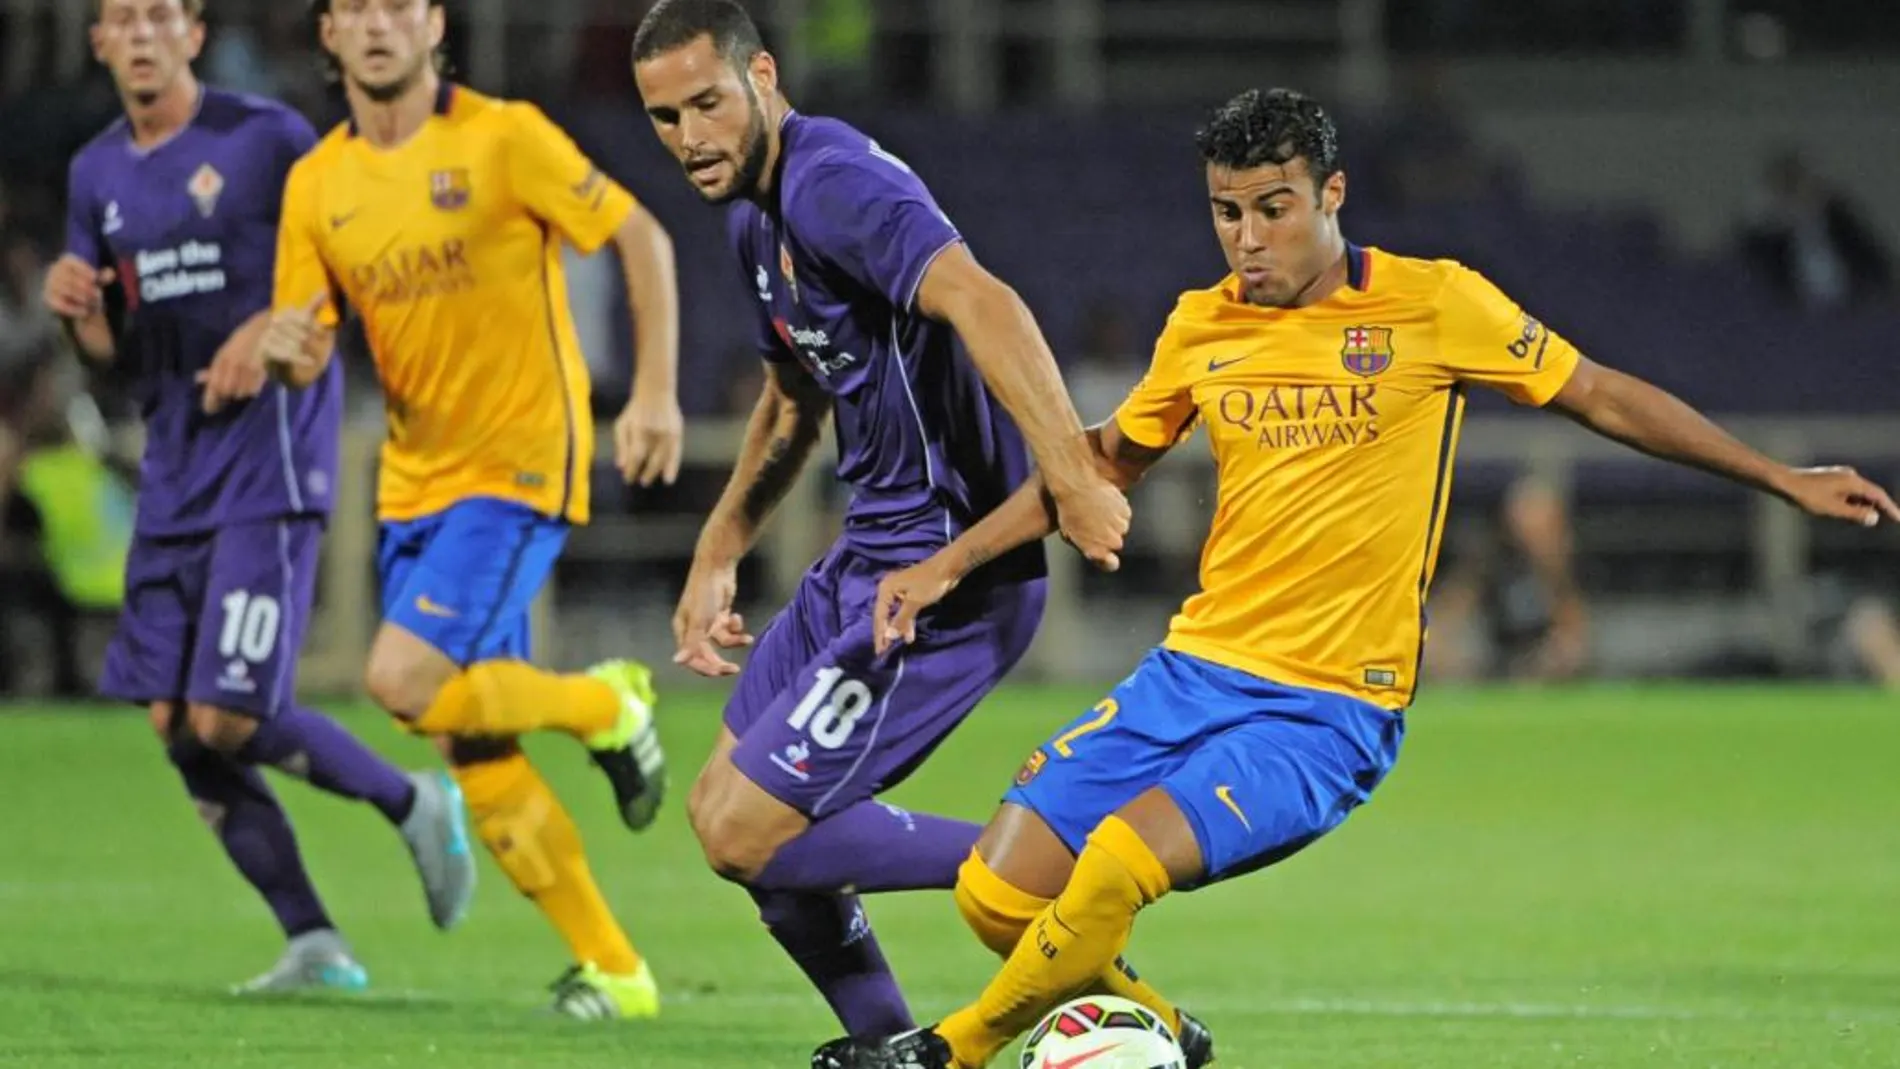 El jugador de la Fiorentina, Mario Suarez, proteje el balón ante el jugador del barcelona, Rafinha